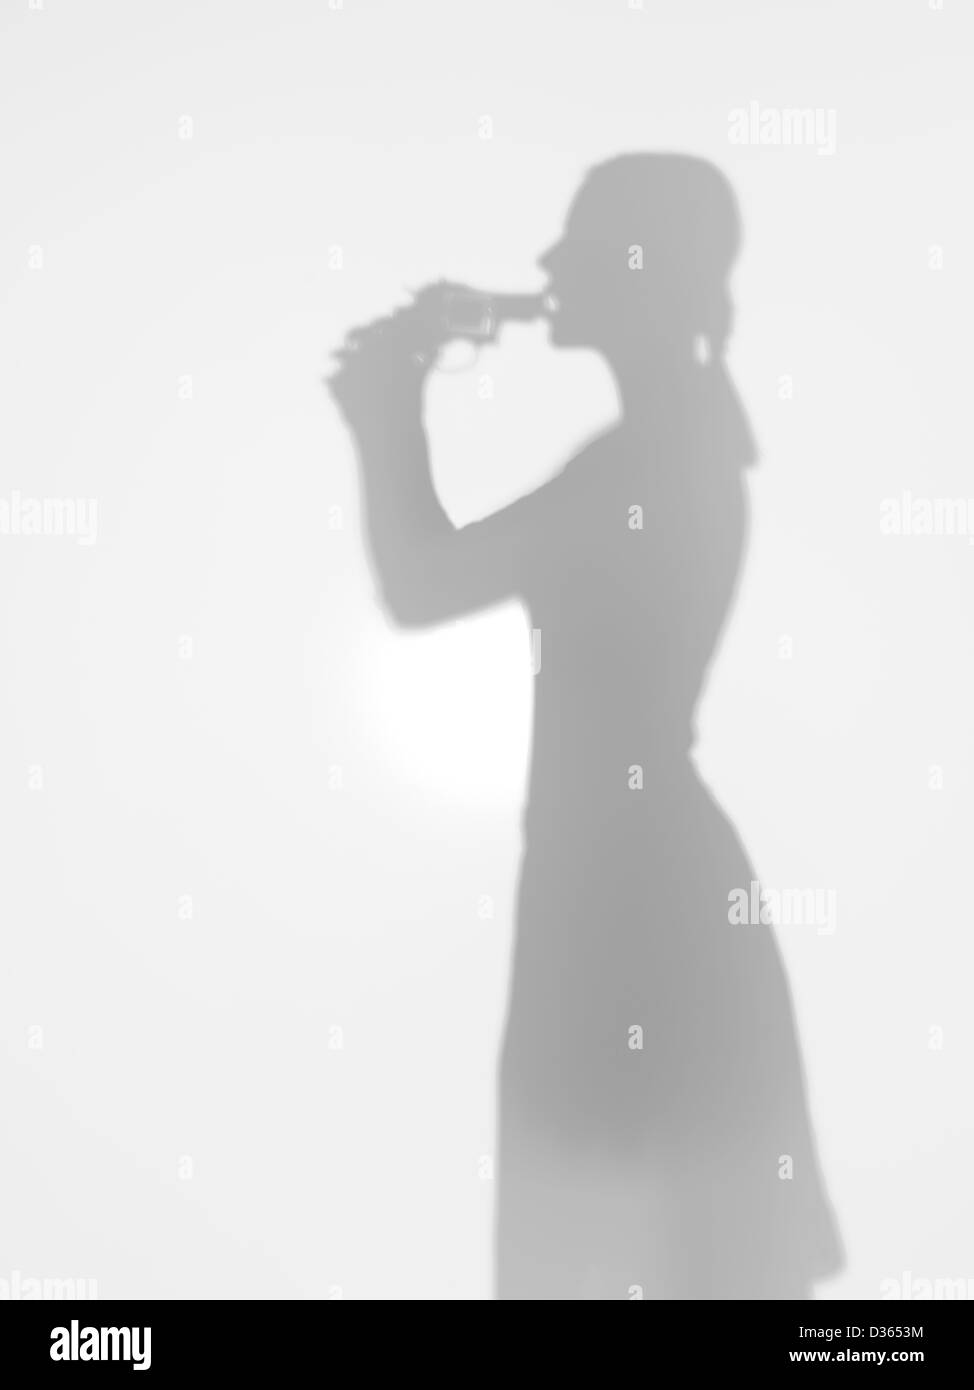 Vista laterale del corpo femmina silhouette in possesso di una pistola contro la sua bocca di suicidarsi, dietro una superficie diffusa Foto Stock